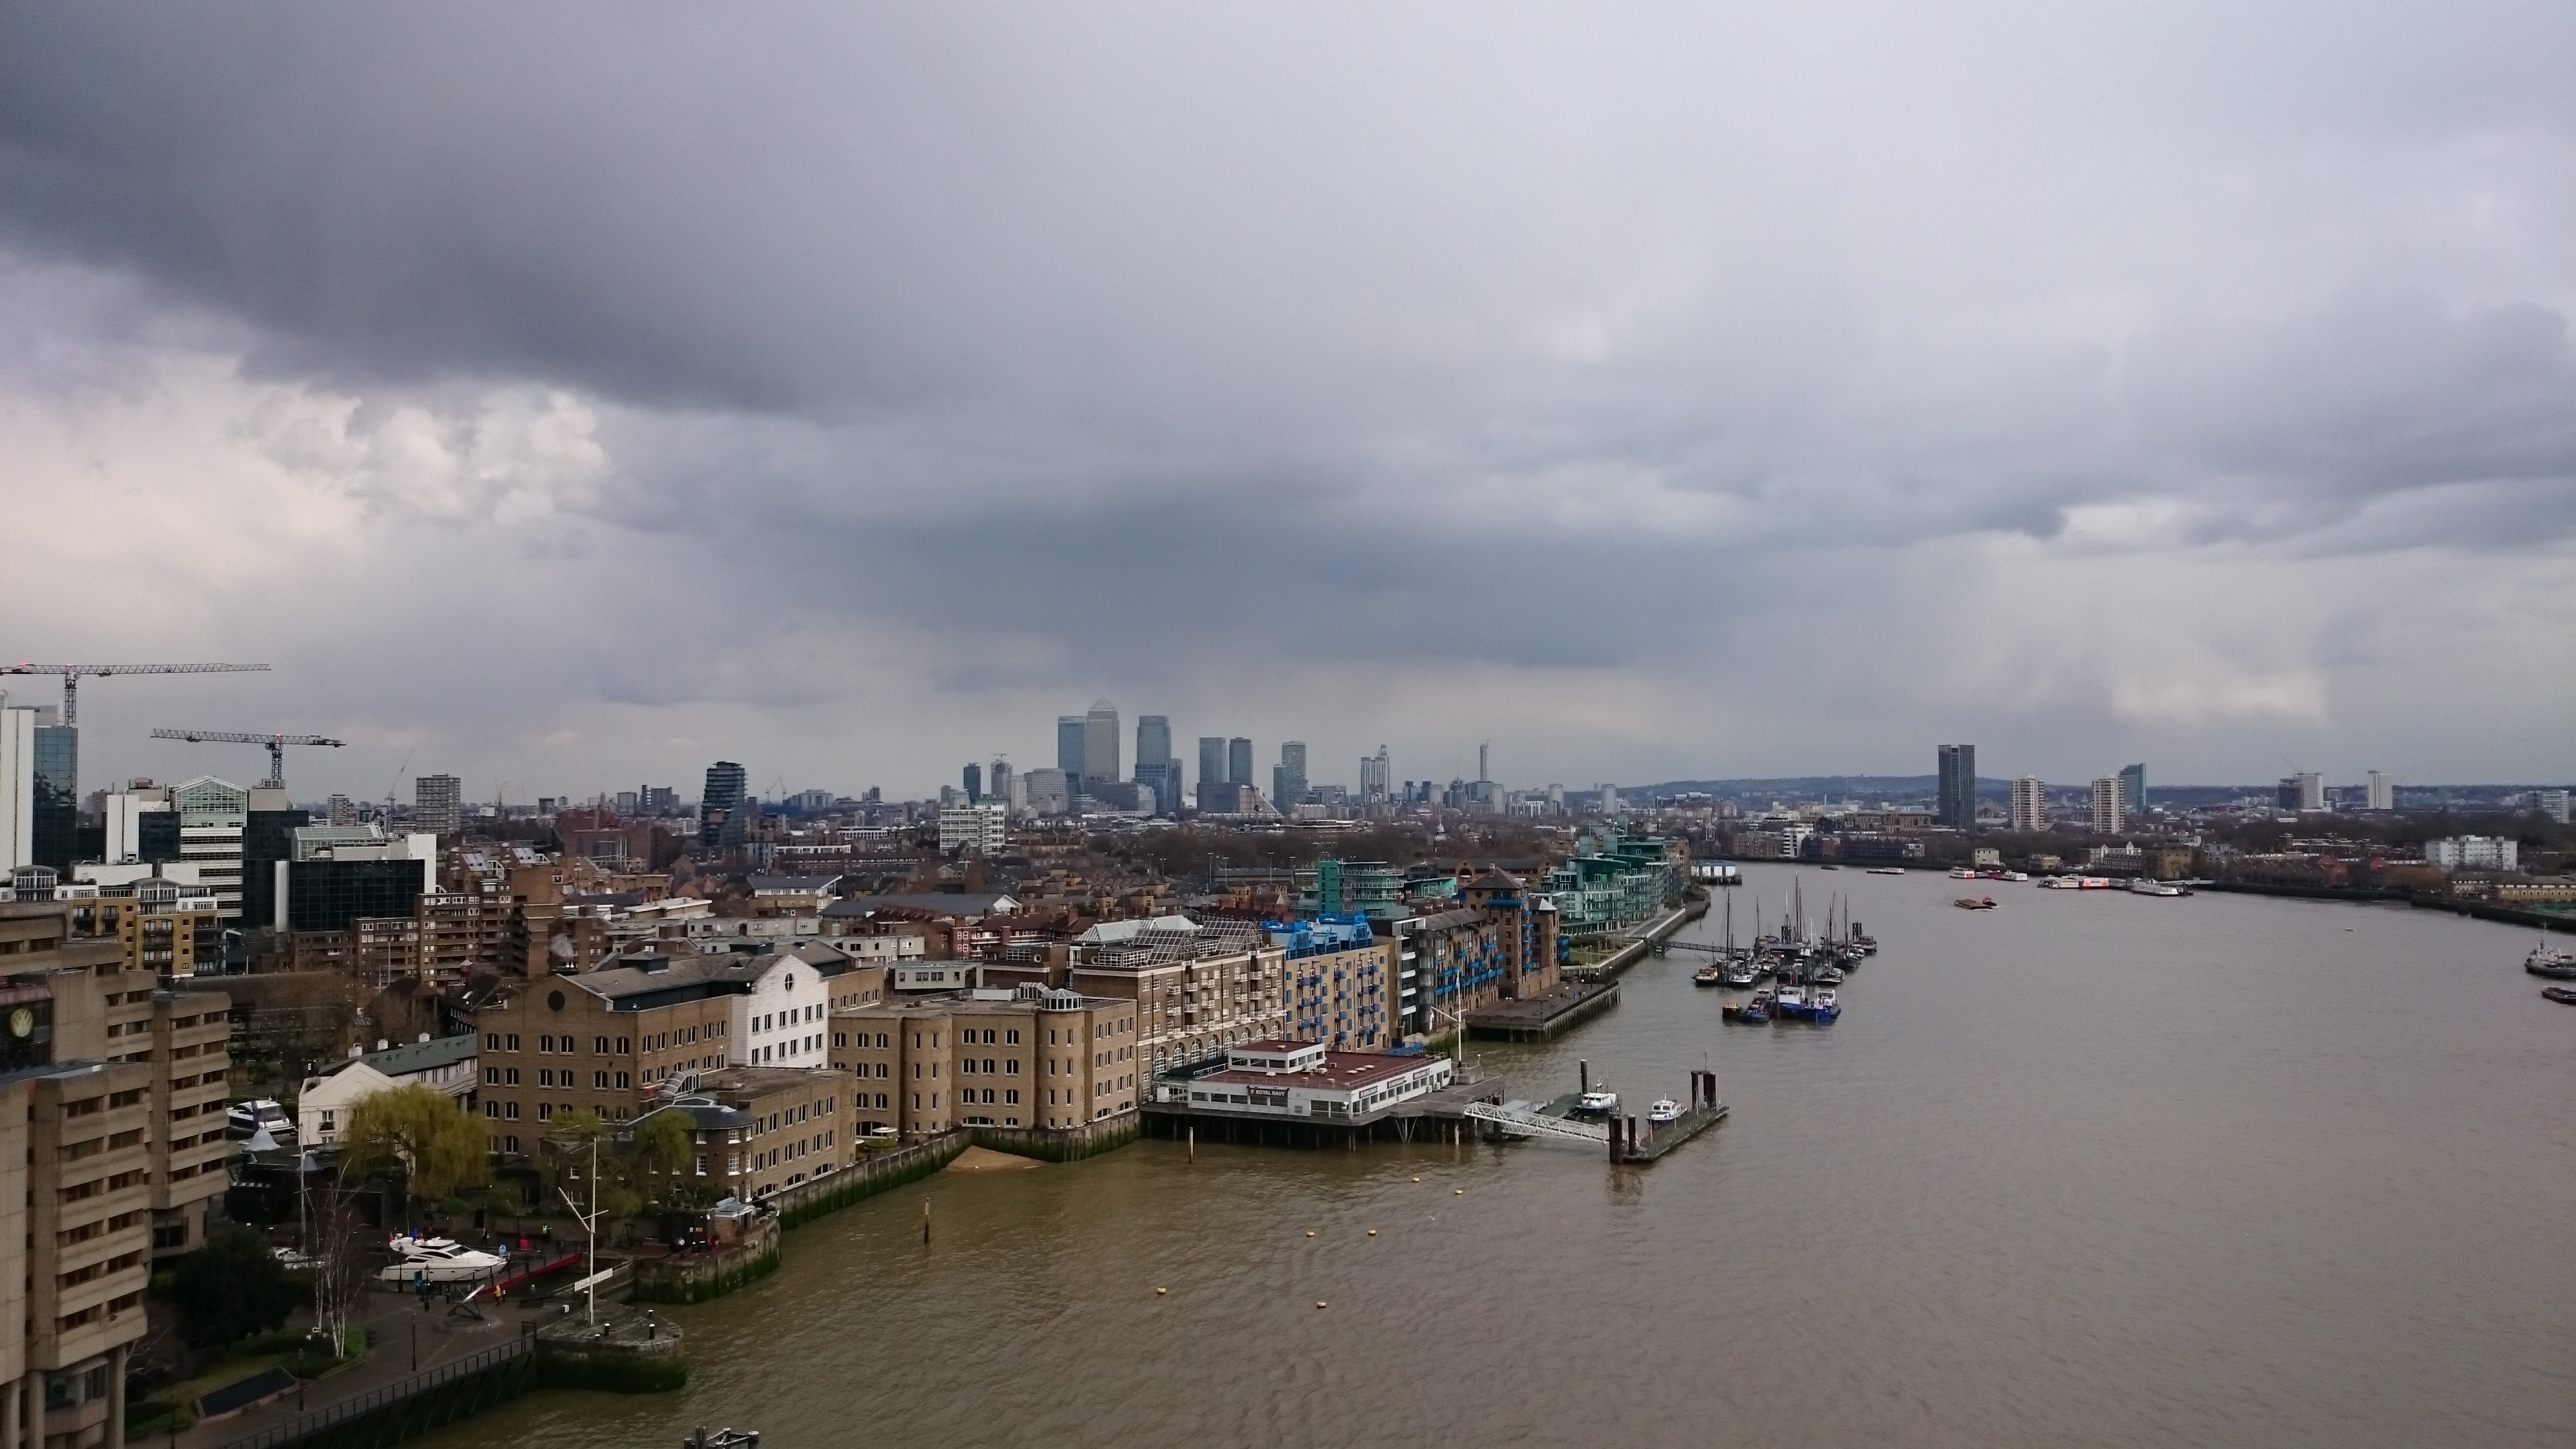 dsc 0700 - Una visita al Tower Bridge en Londres